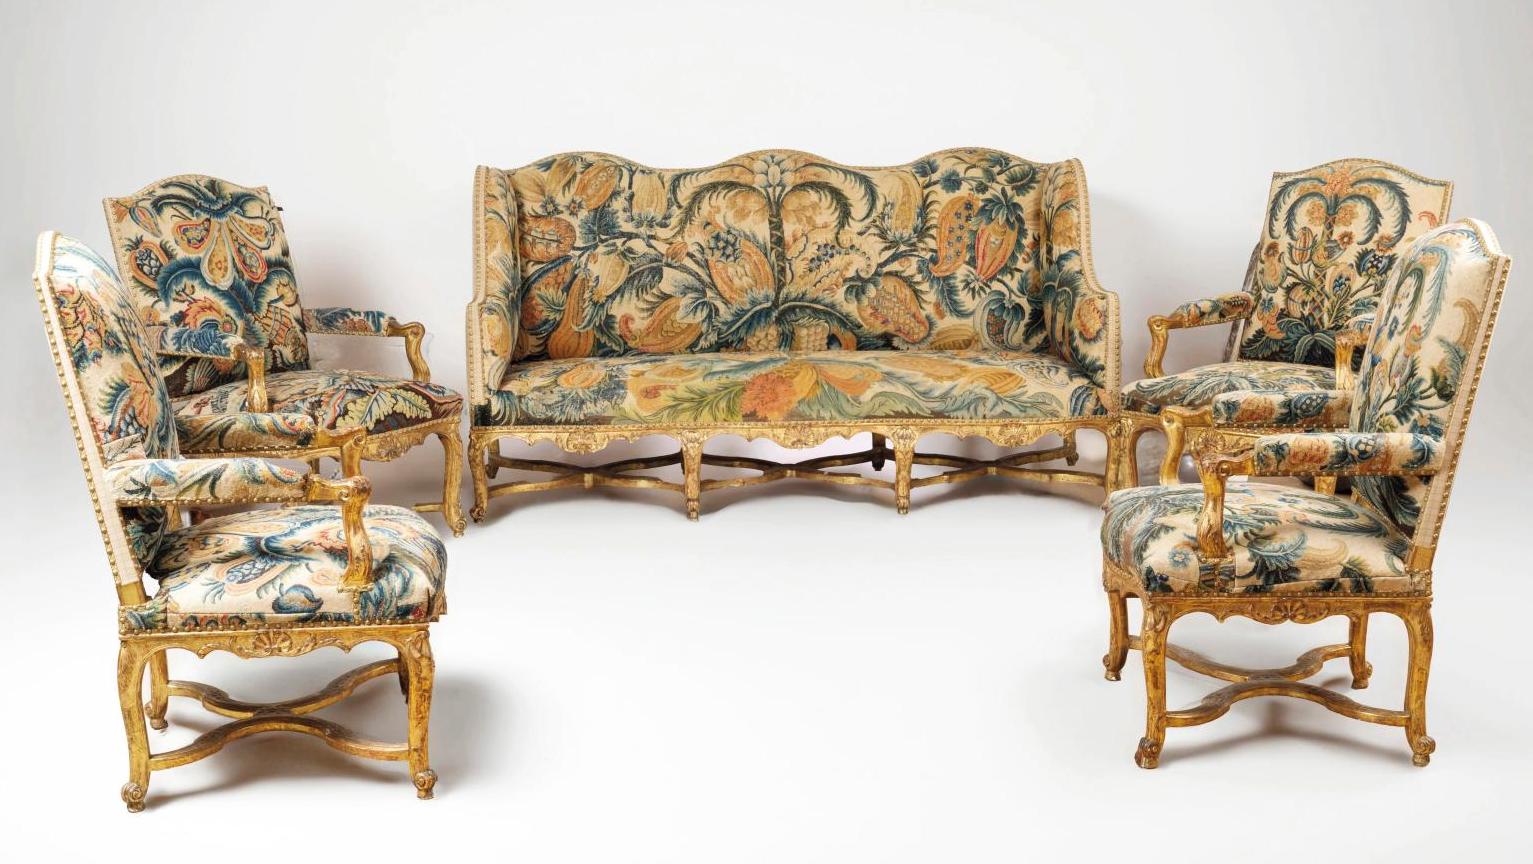 Époque Régence. Mobilier de salon composé de quatre fauteuils à la reine et d’un... Un mobilier historique d'époque Régence